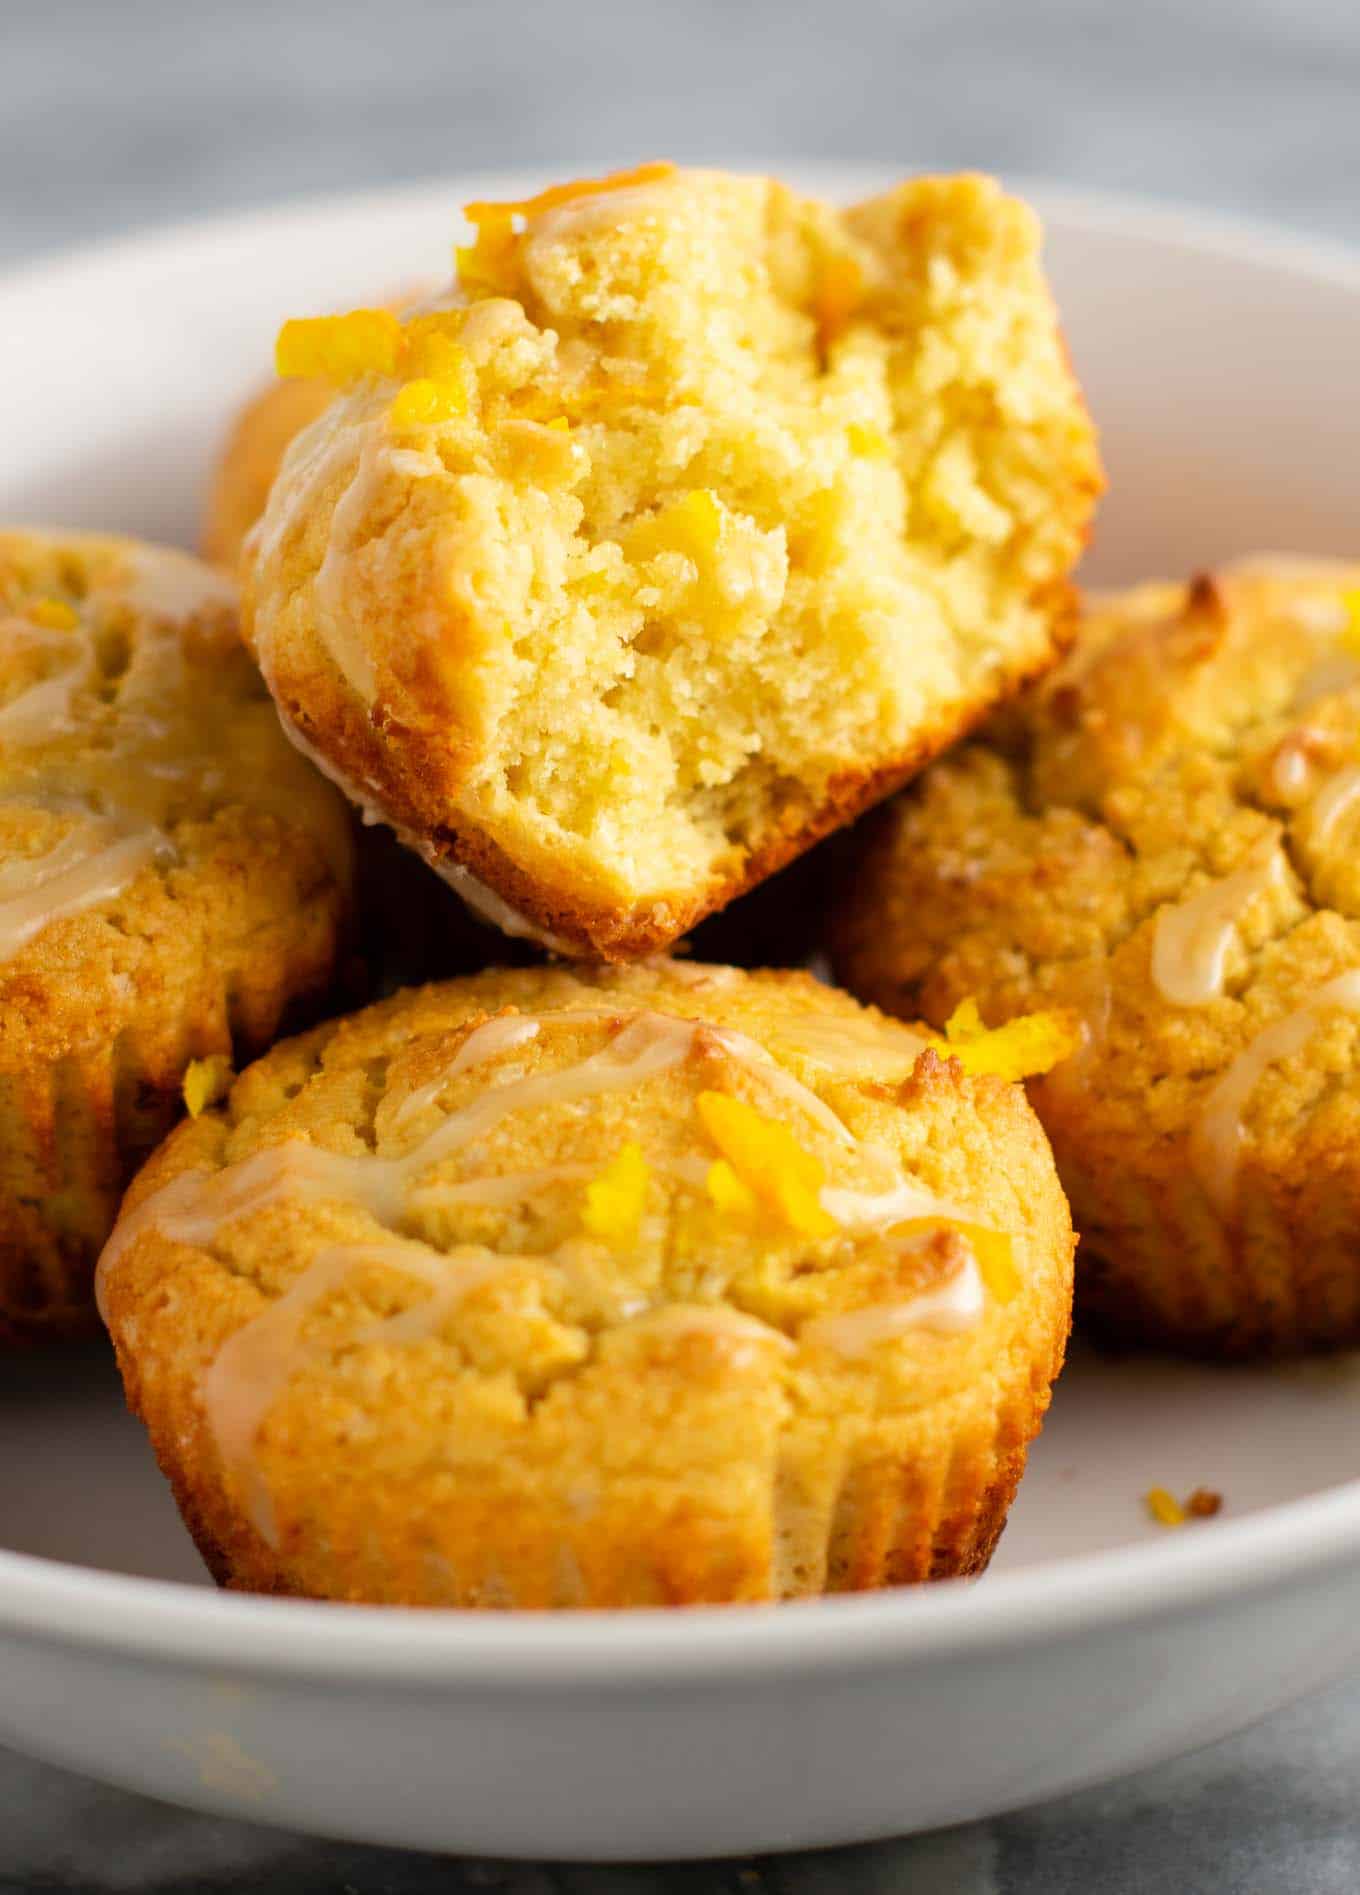 Gluten free muffins recipe with sweet orange glaze 